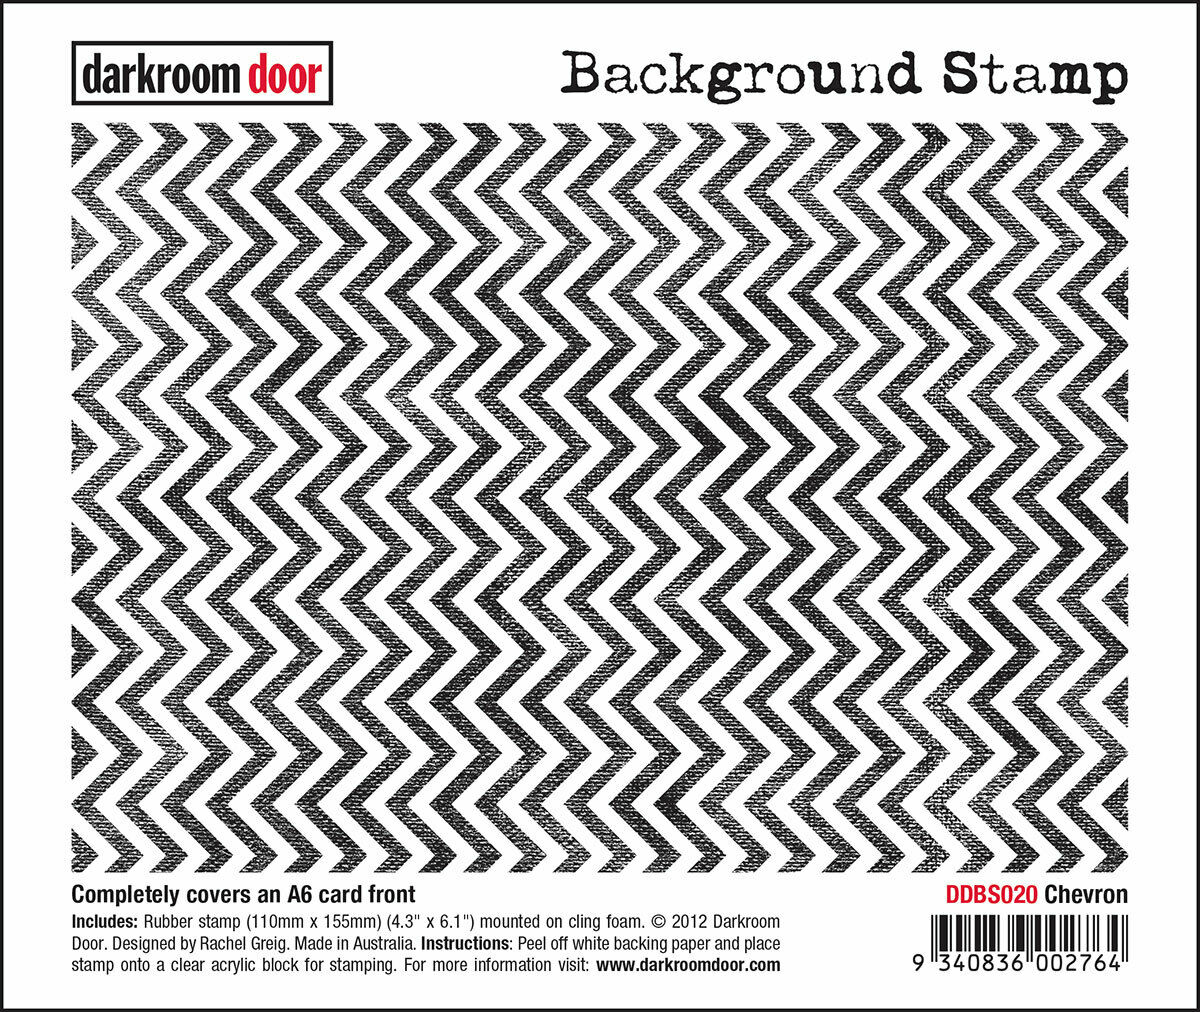 Darkroom Door Background Rubber Stamp Chevron 110mm x 155mm